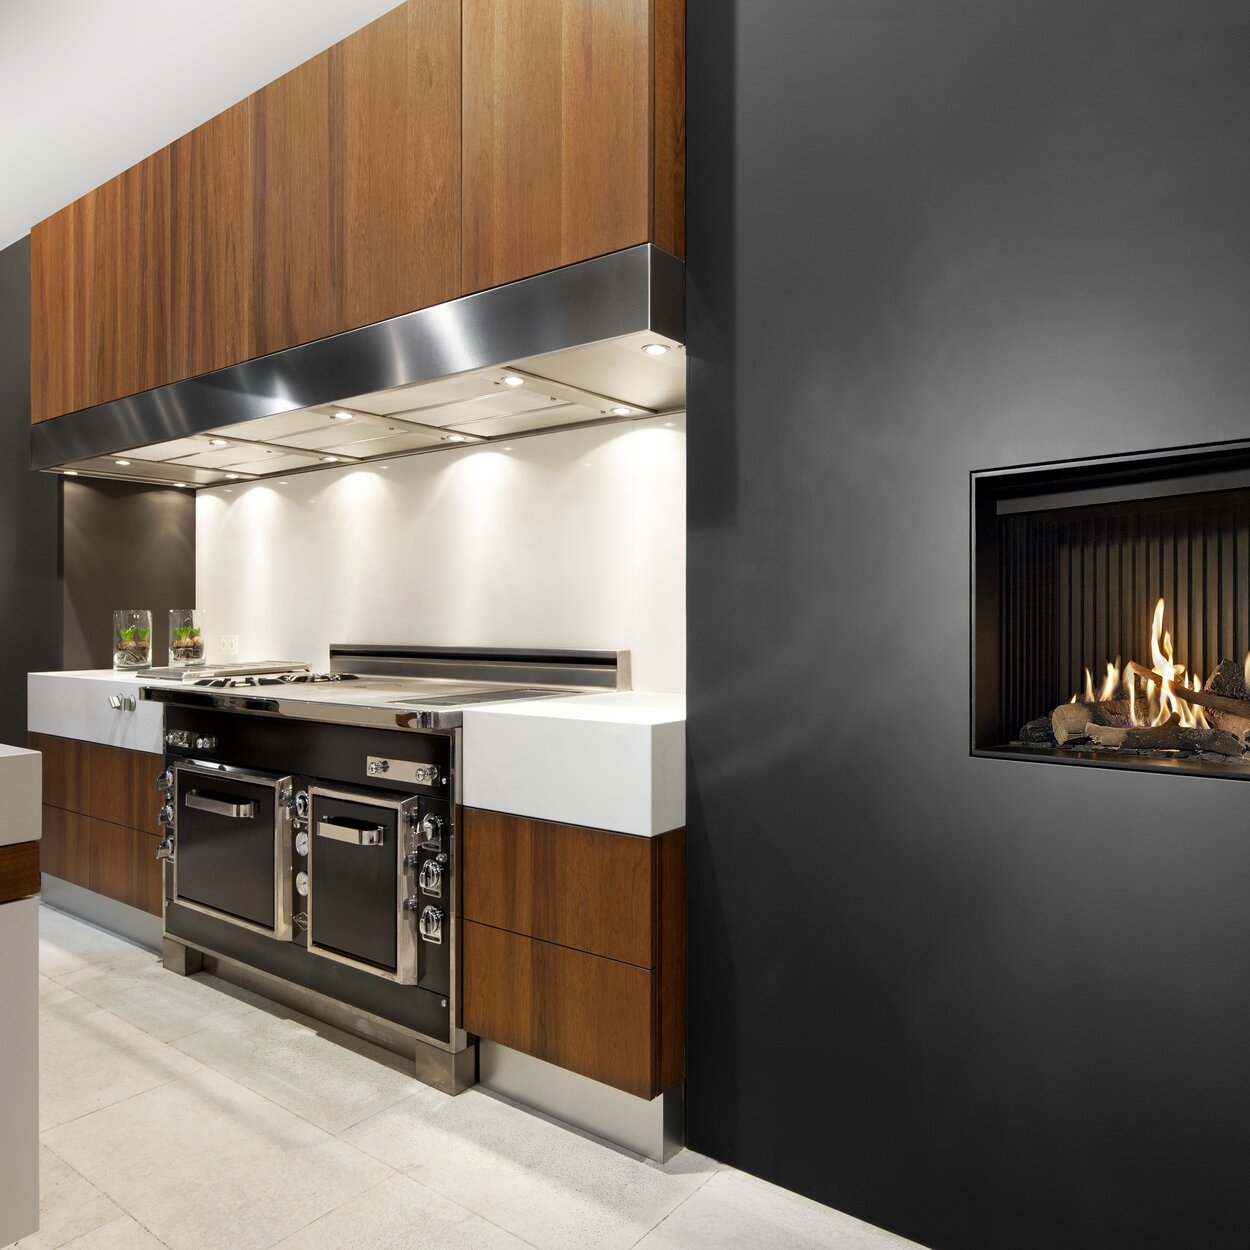 Camino a gas G60/48F versione frontale integrato nella parete nera della cucina con elementi in legno